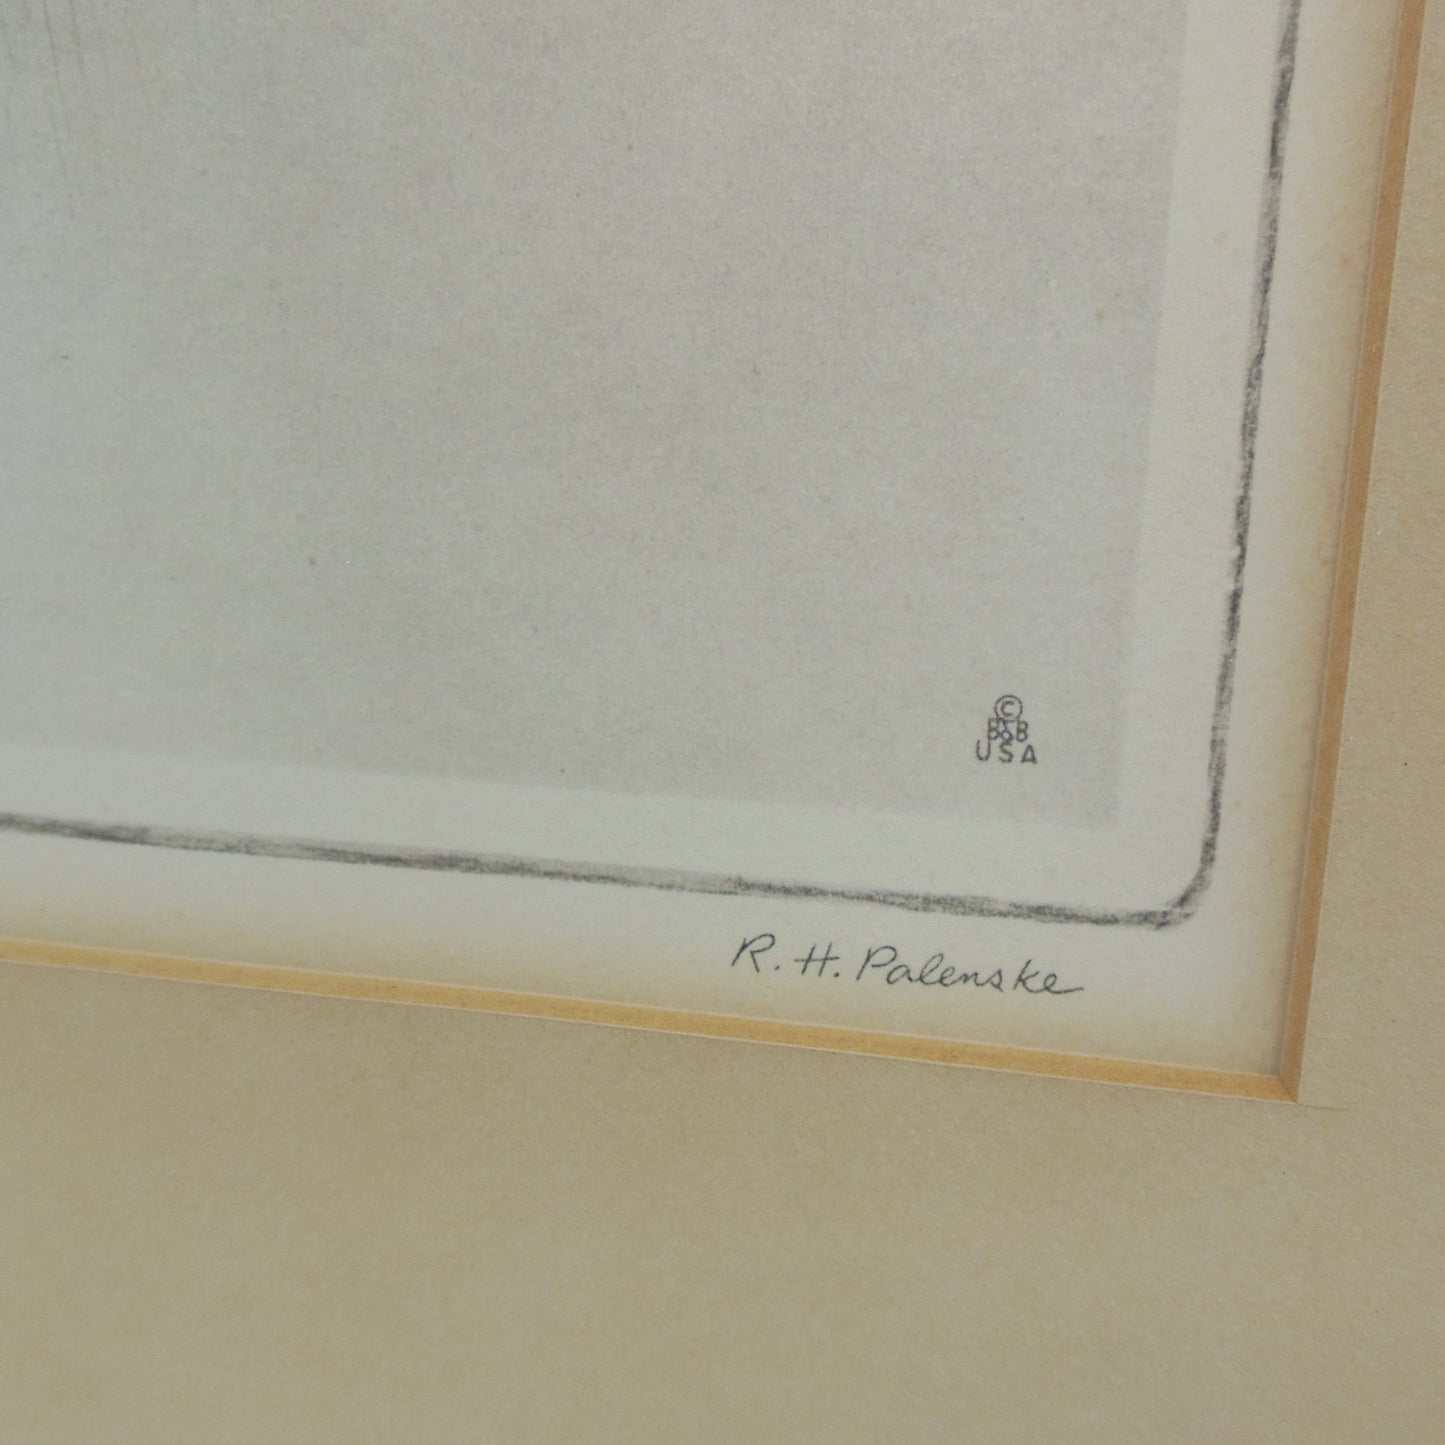 R. H. Palenske Framed Print Man O' War Race Horse Signed